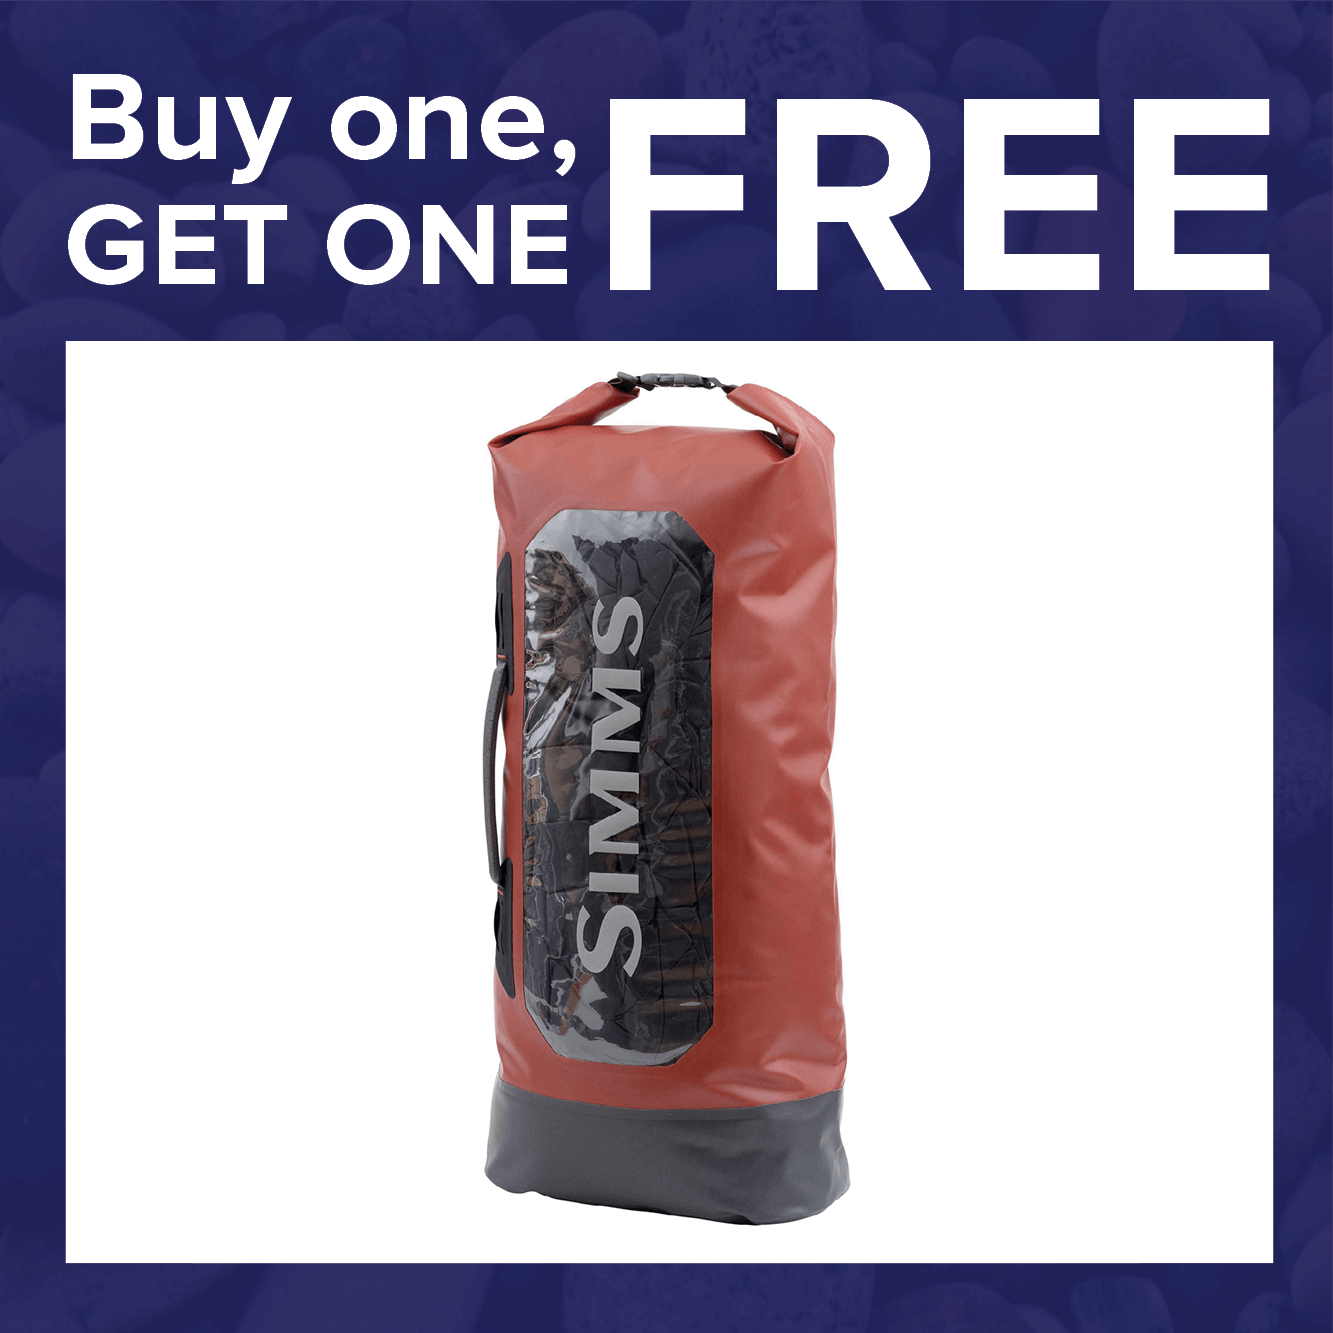 Buy 1, Get 1 FREE on Simms Dry Creek Roll-Top Bags!